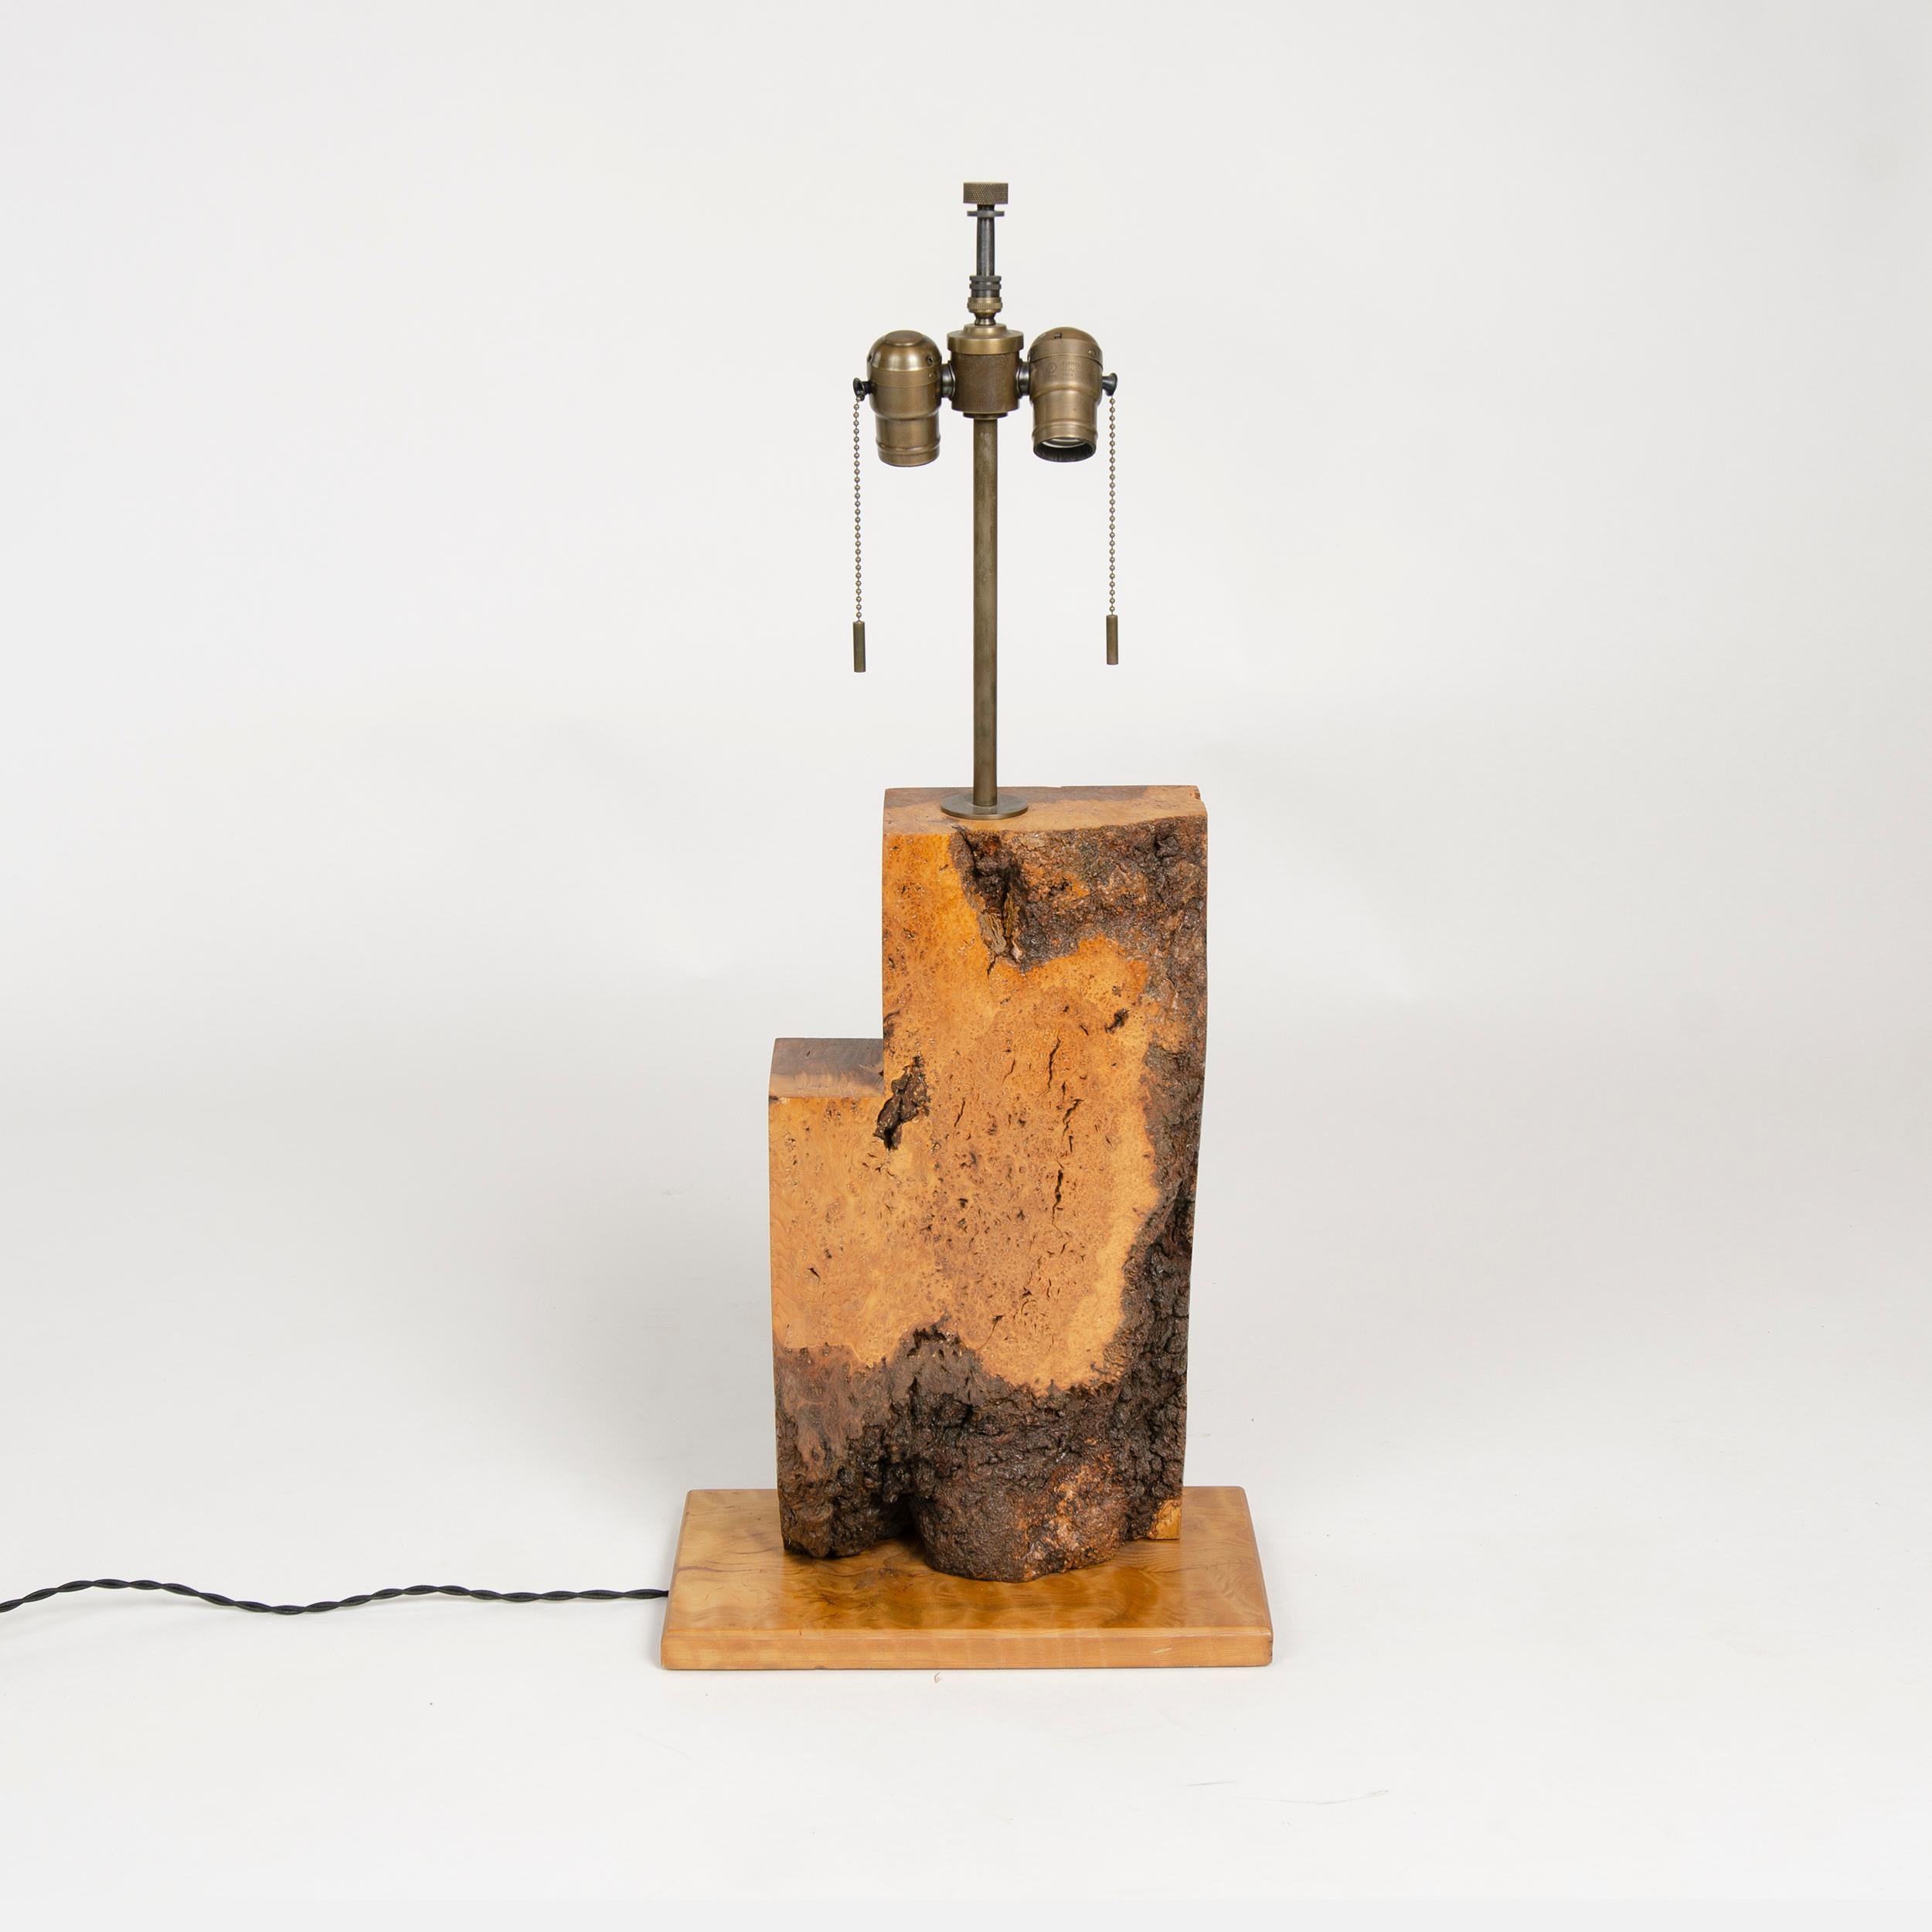 Lampe de table à base rectangulaire en bois ronceux, non attribuée, de l'Artisanat Américain. 
L'abat-jour n'est pas inclus.